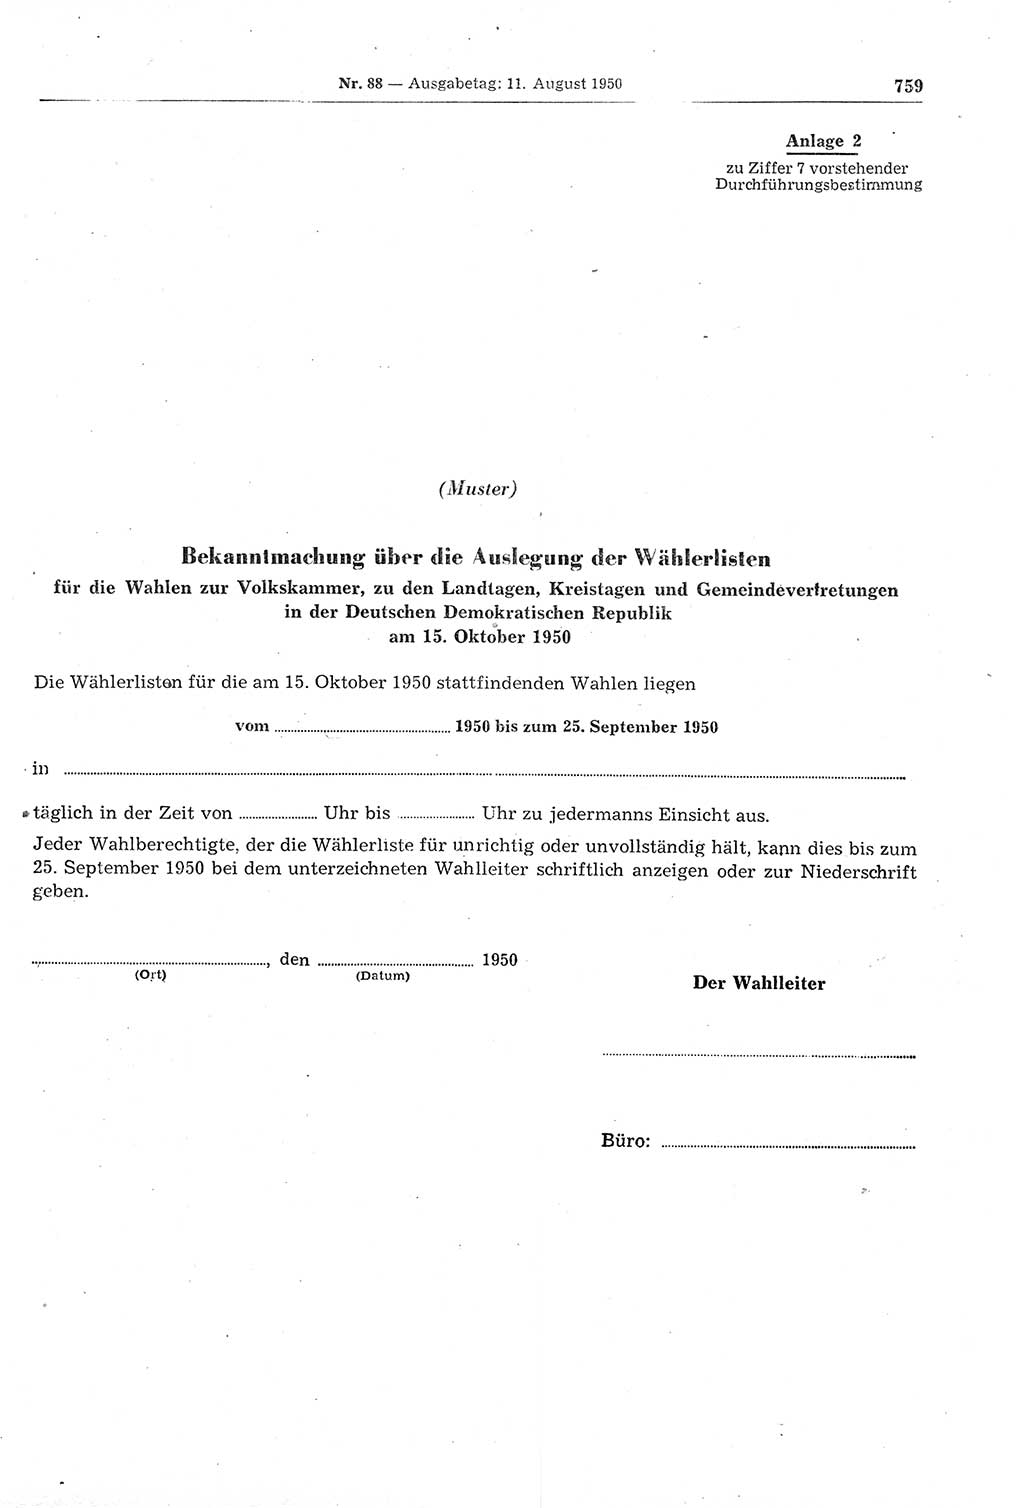 Gesetzblatt (GBl.) der Deutschen Demokratischen Republik (DDR) 1950, Seite 759 (GBl. DDR 1950, S. 759)